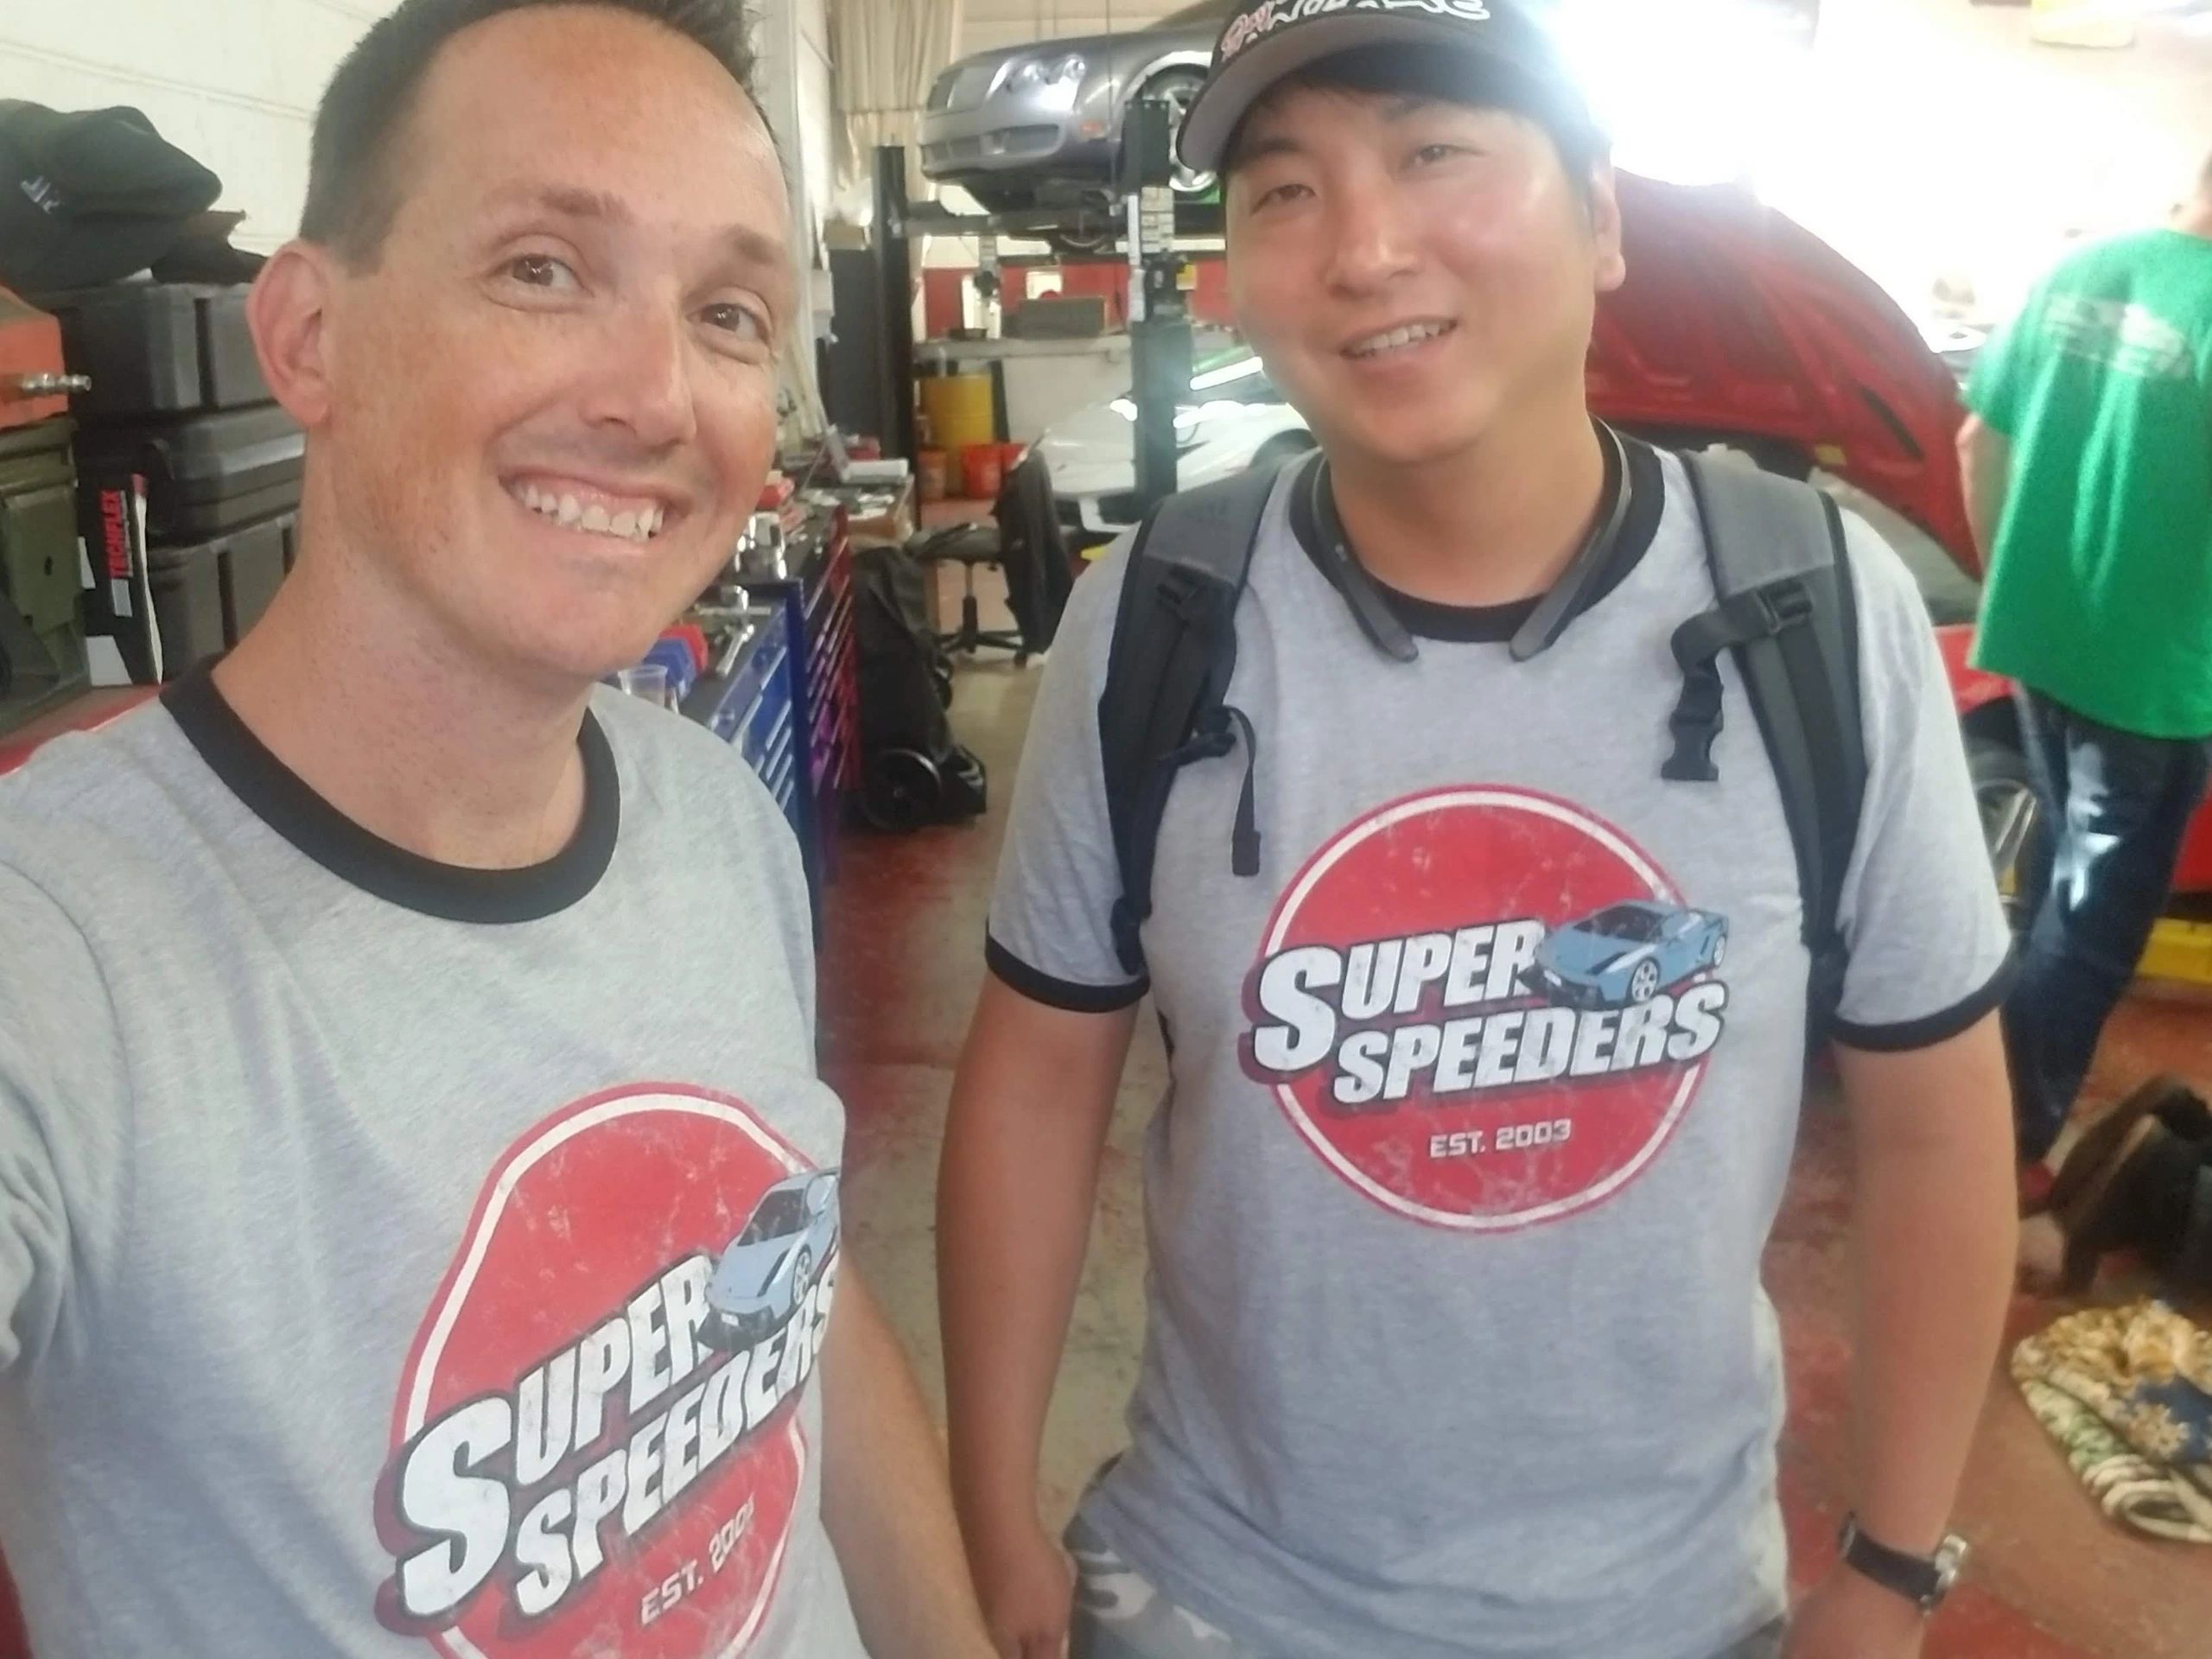 Super Speeders Gear - Super Speeders, Shirts